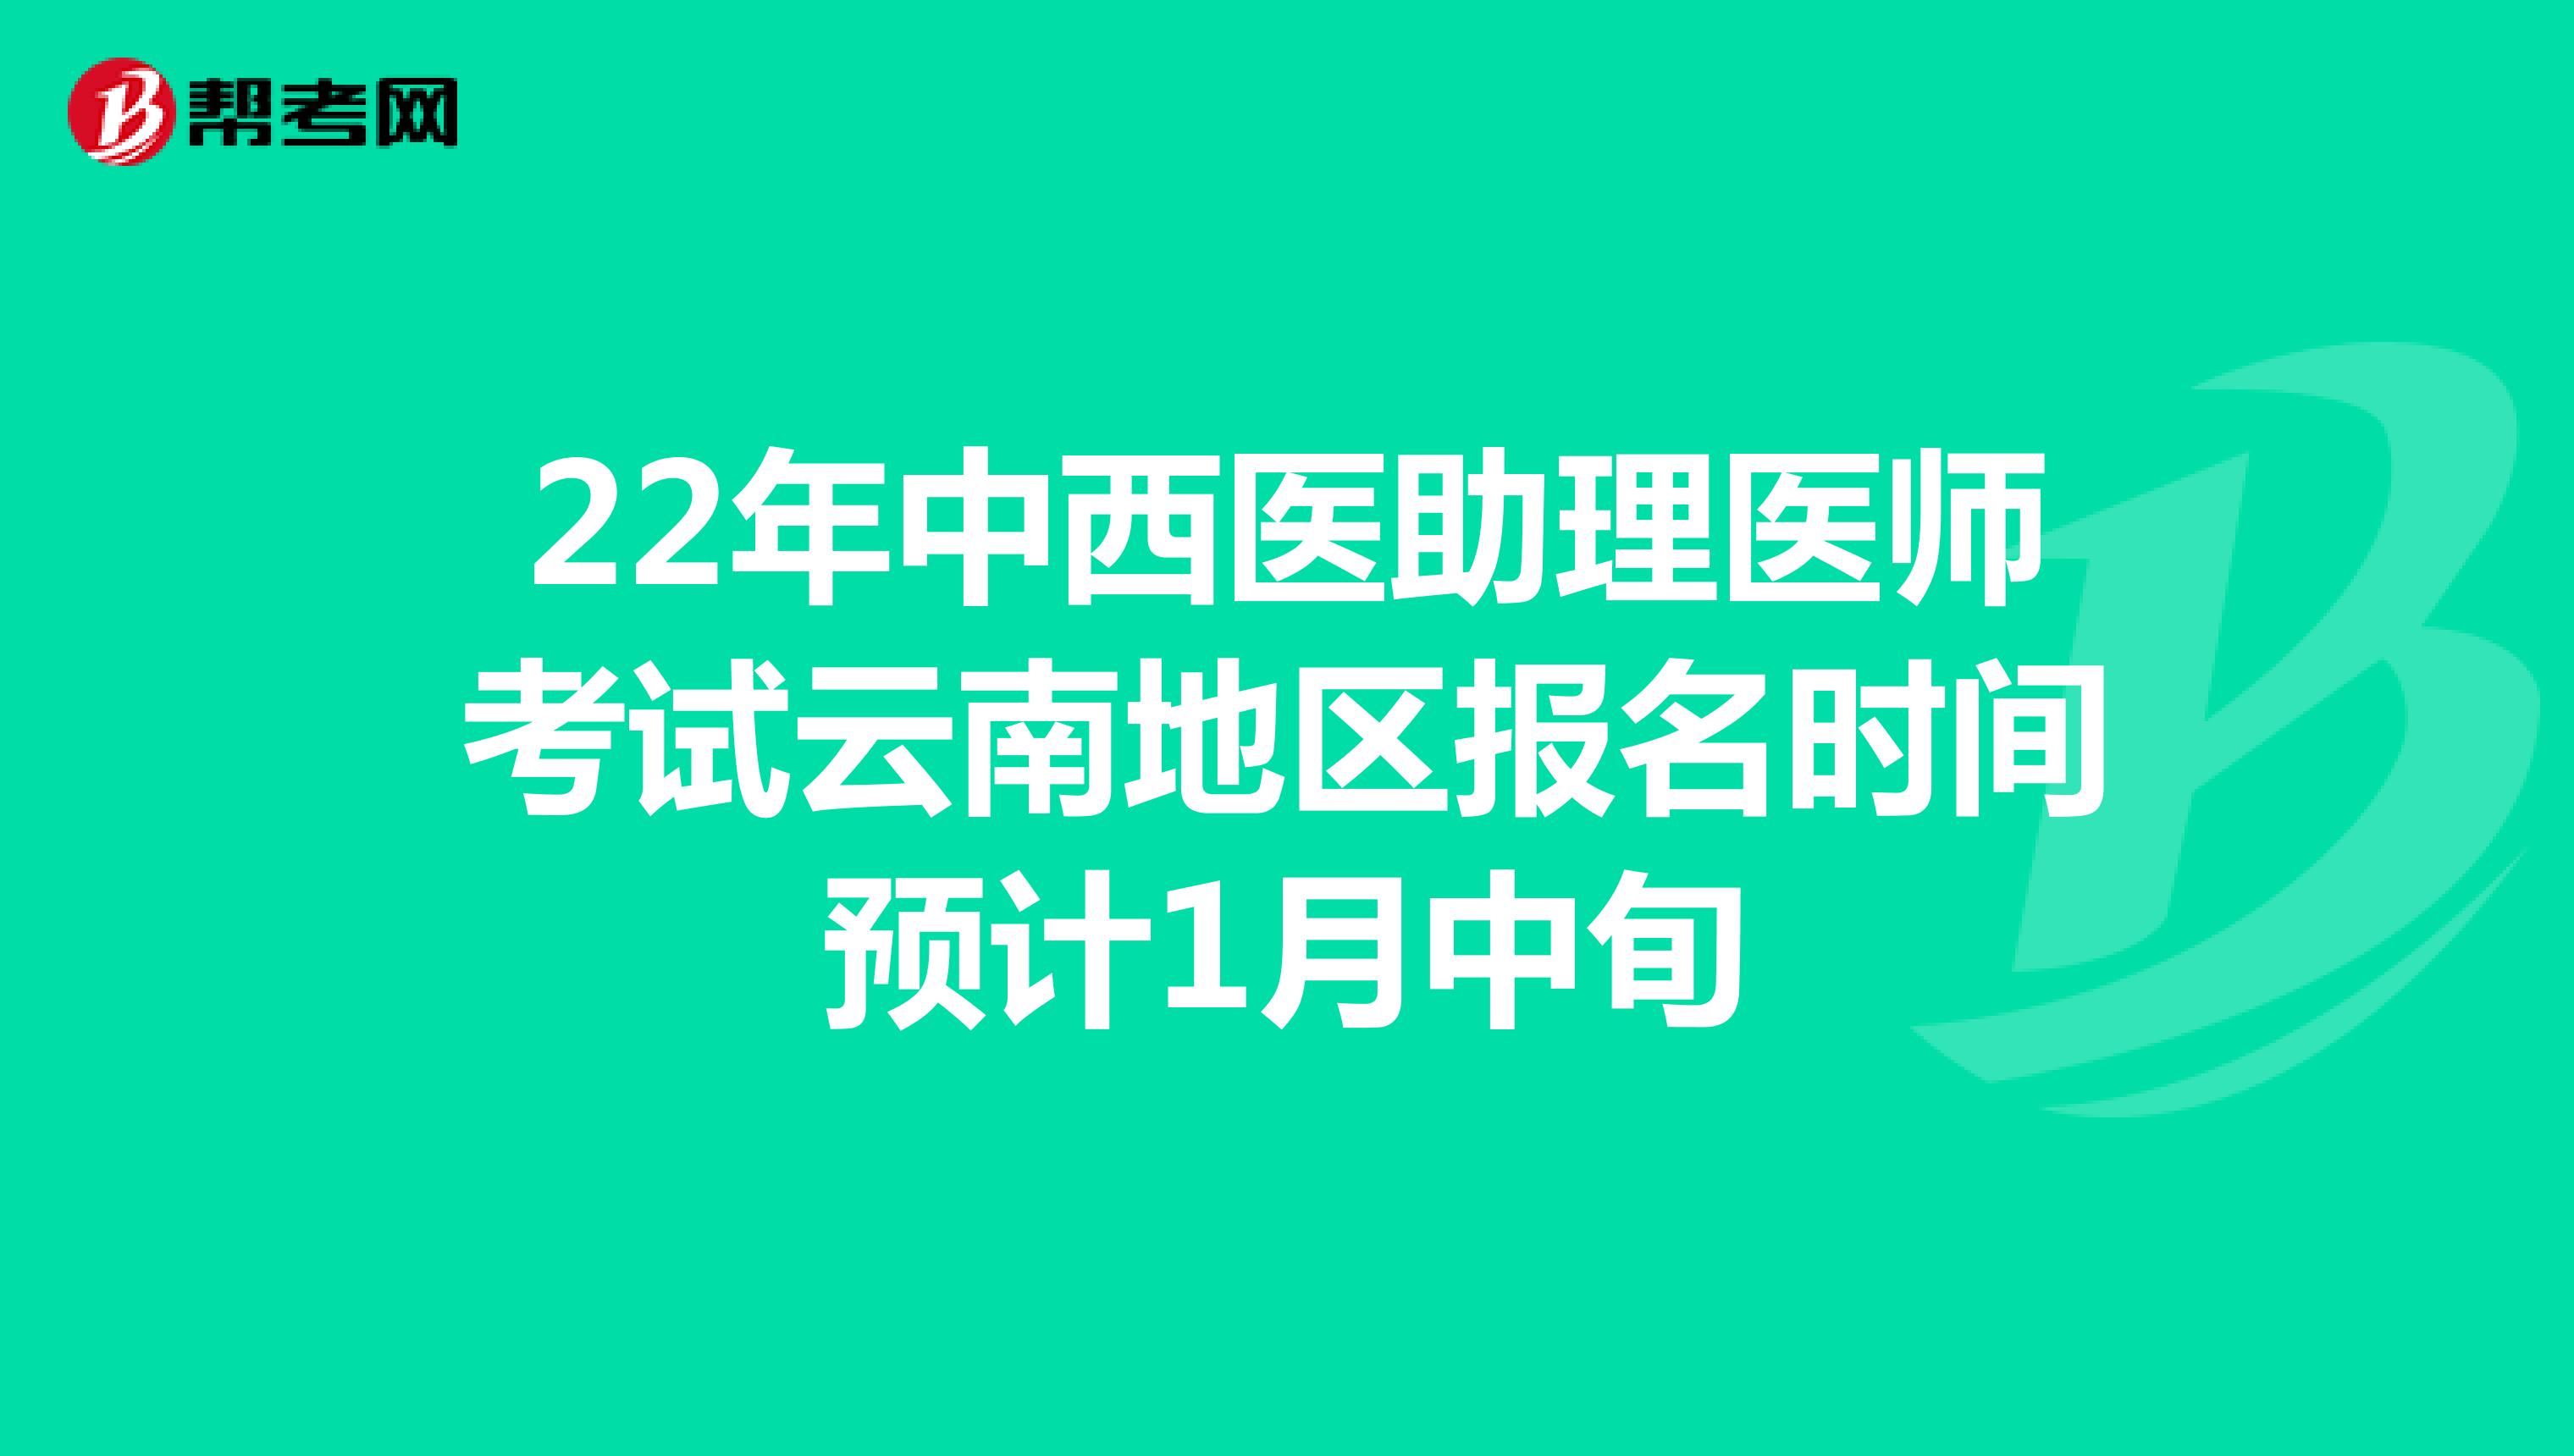 22年中西医助理医师考试云南地区报名时间预计1月中旬